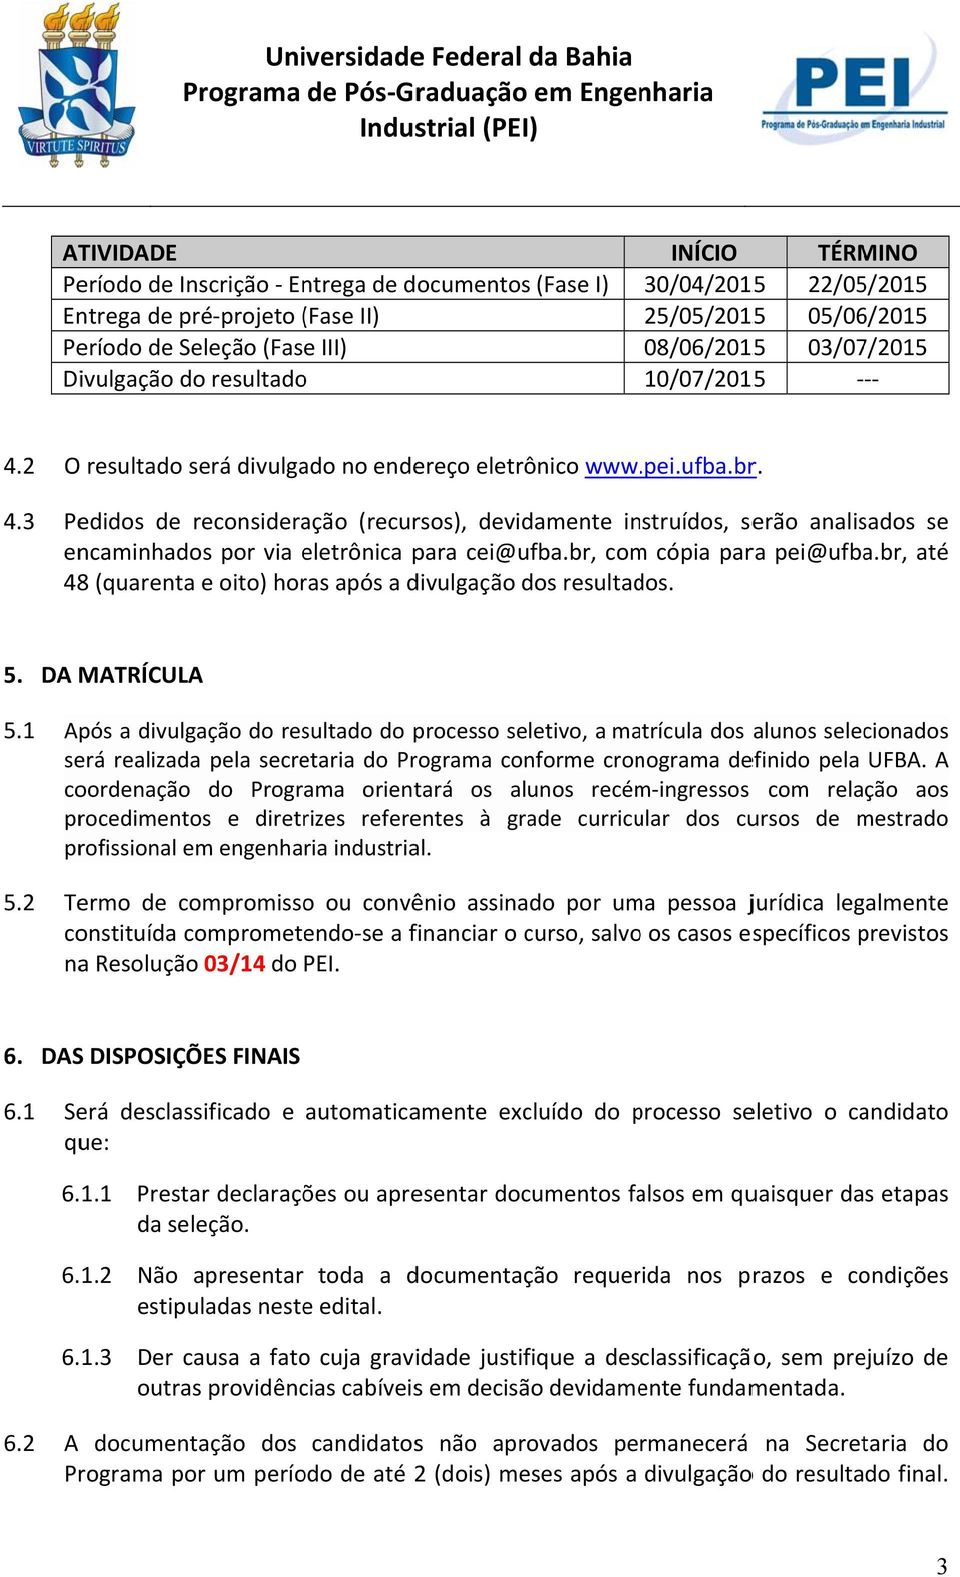 ufba.br. 4.3 Pedidos de reconsideração (recursos), devidamente instruídos, serão analisados se encaminhados por via eletrônica para cei@ufba.br, comm cópia para pei@ufba.